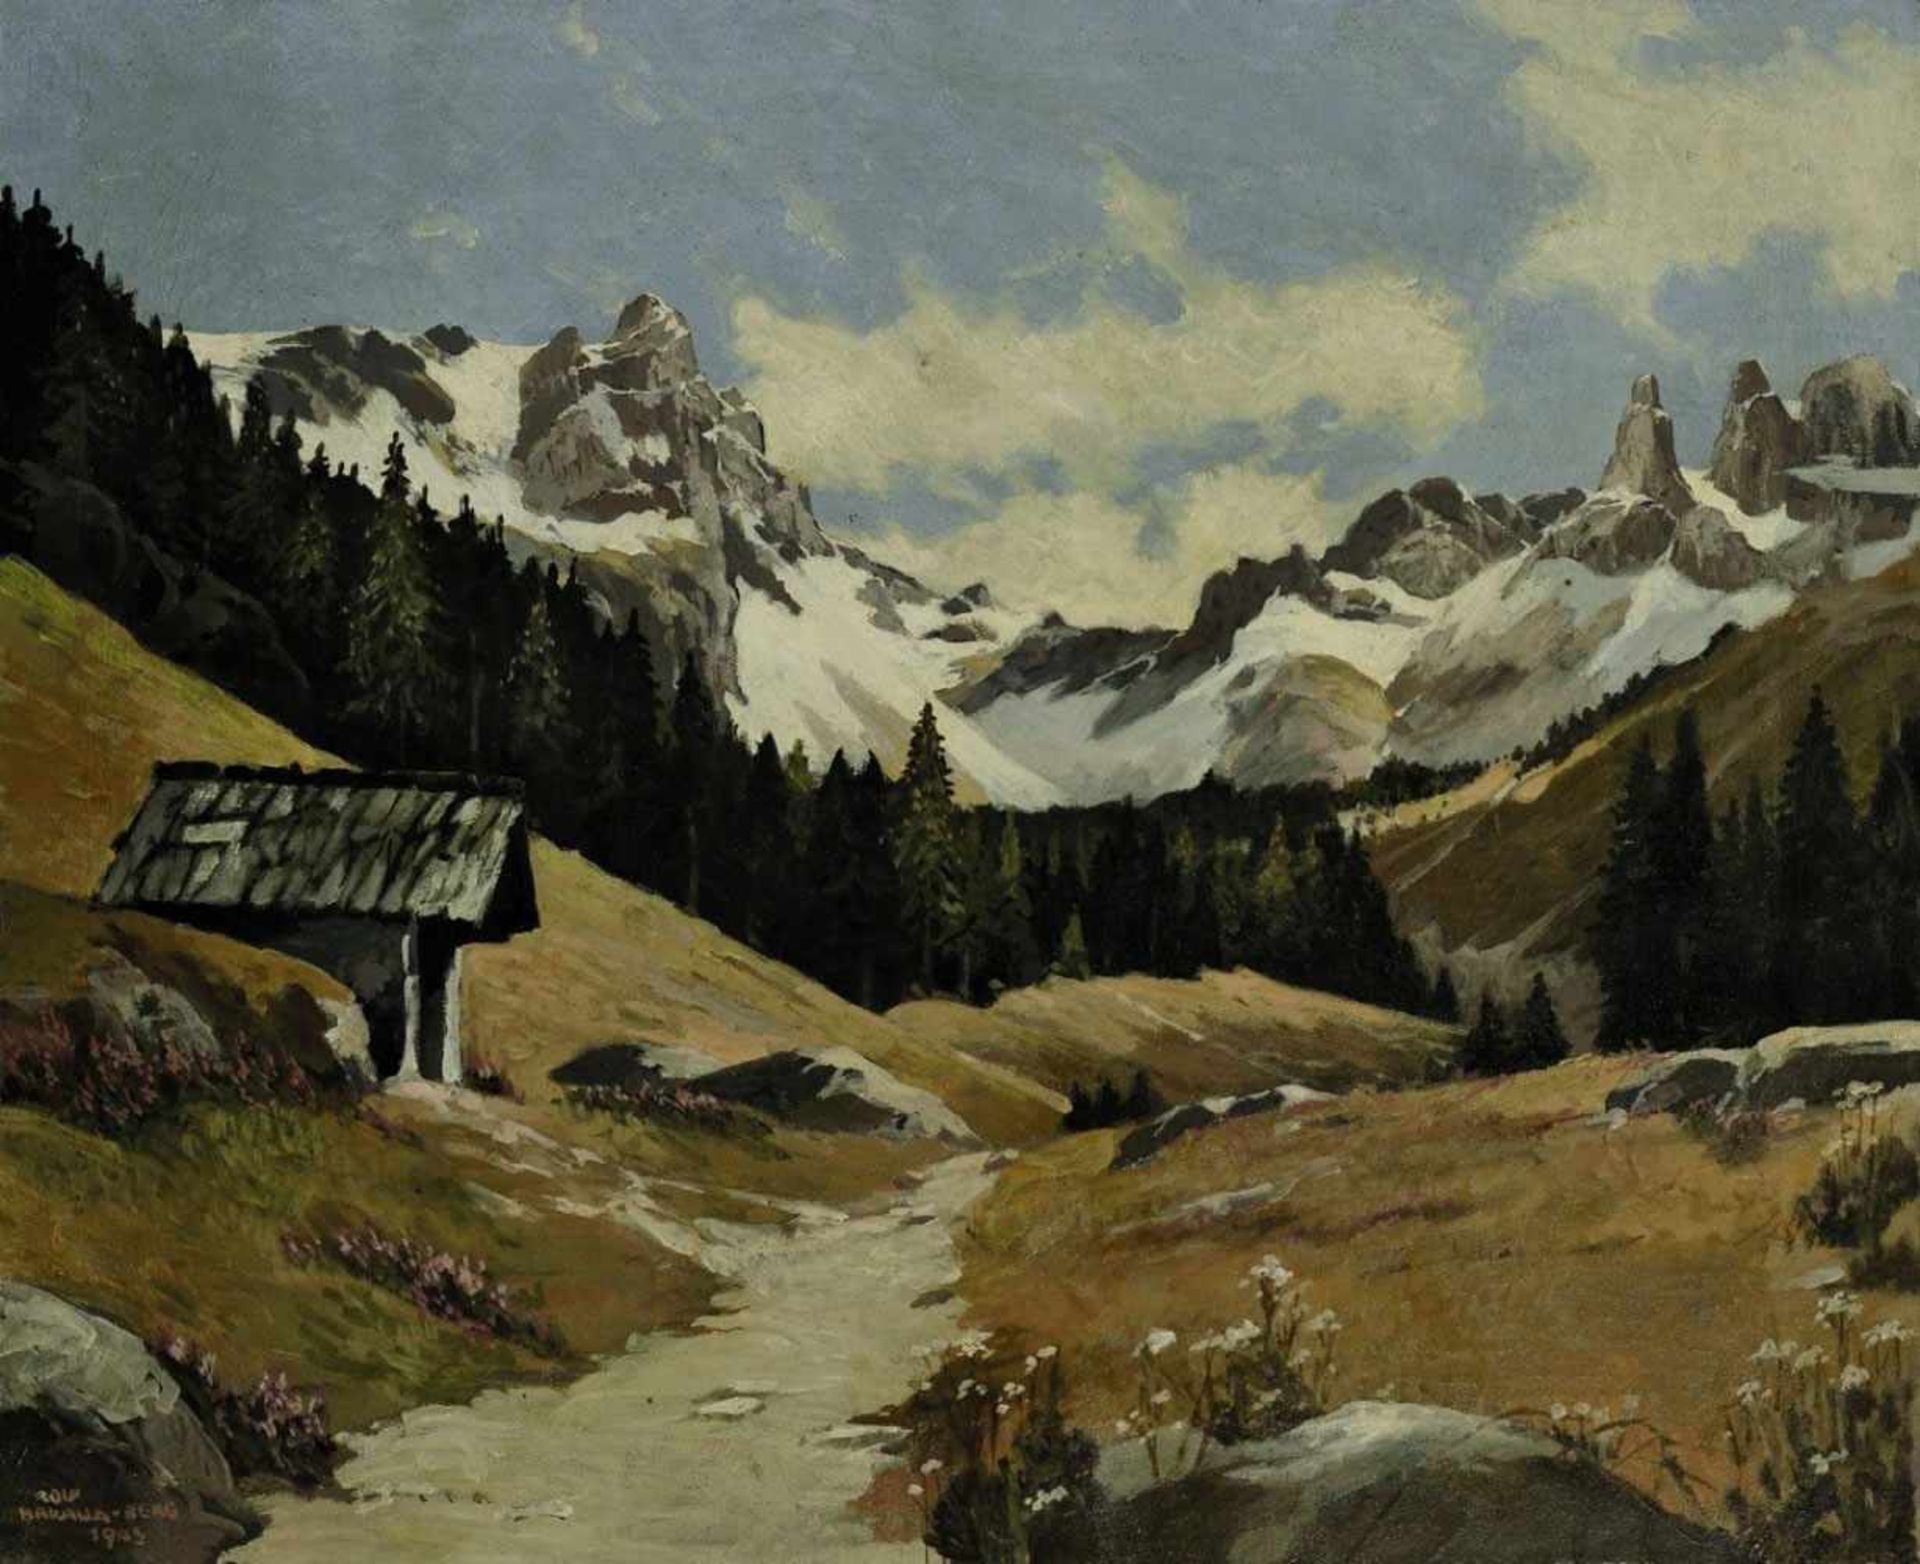 Bakalla, Rolf geb. 1877 Wien Gebirgslandschaft Öl/Lwd. 49,5 x 59,5 cm. L. u. signiert, bez. "Berg" - Bild 2 aus 2